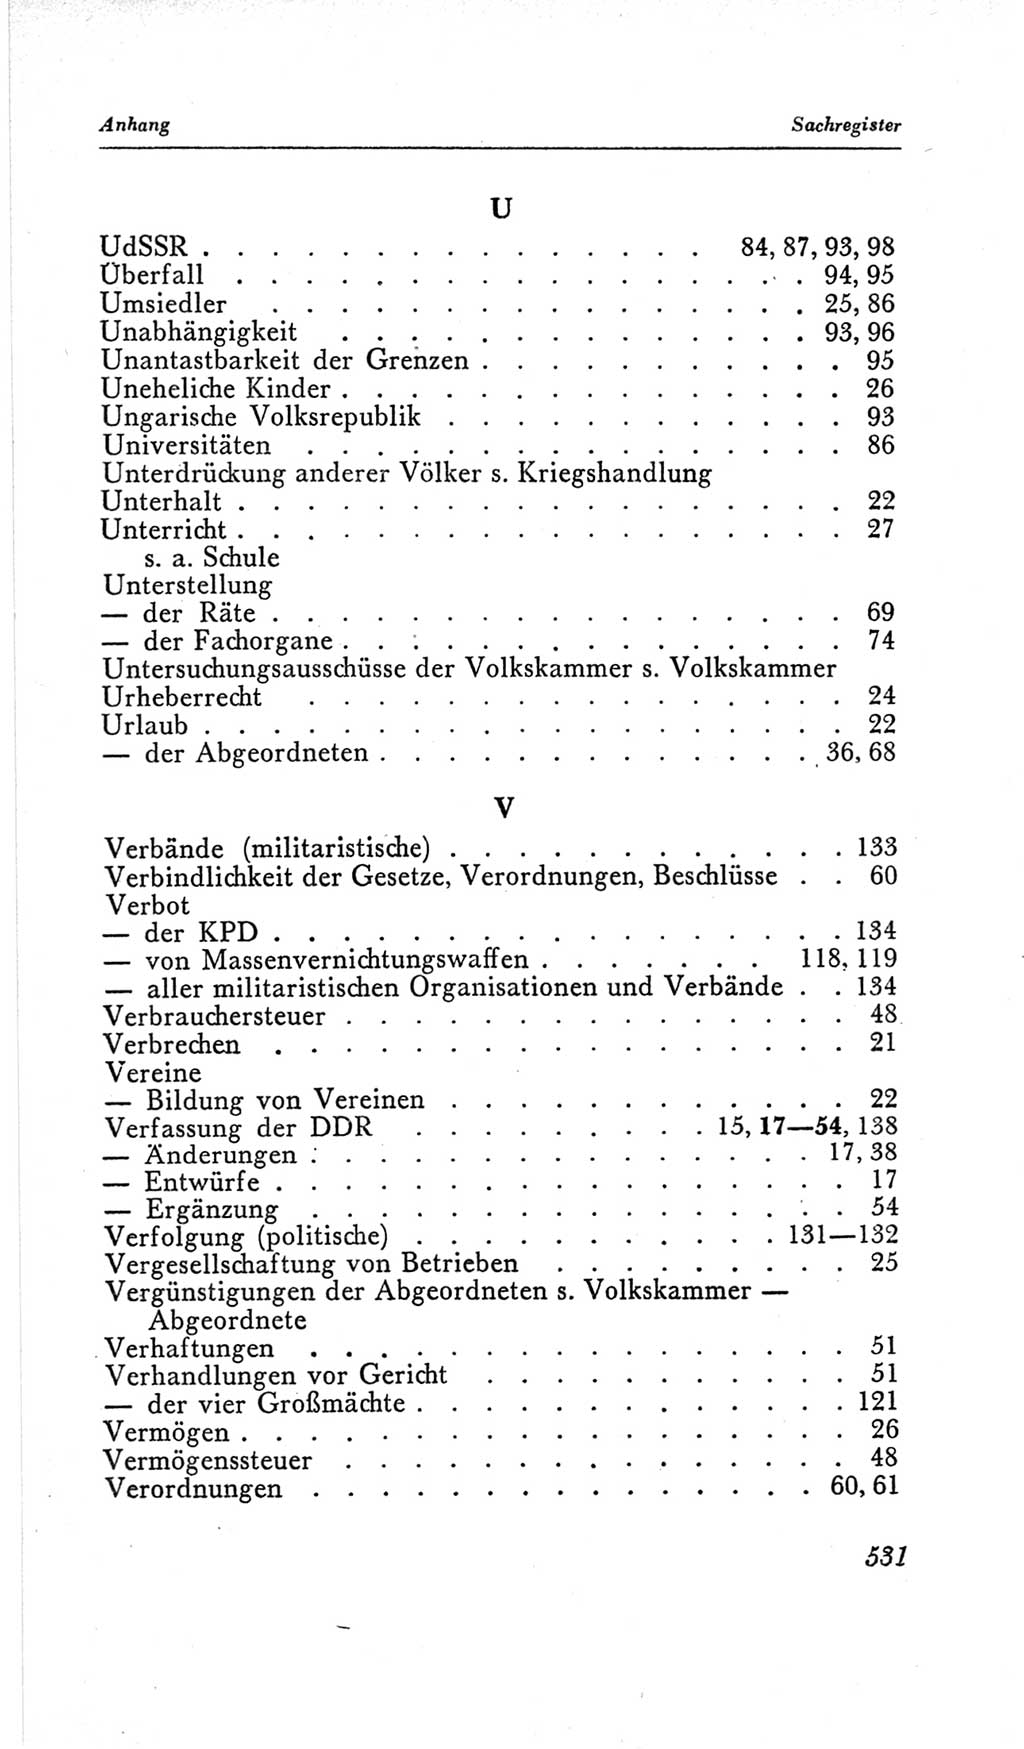 Handbuch der Volkskammer (VK) der Deutschen Demokratischen Republik (DDR), 2. Wahlperiode 1954-1958, Seite 531 (Hdb. VK. DDR, 2. WP. 1954-1958, S. 531)